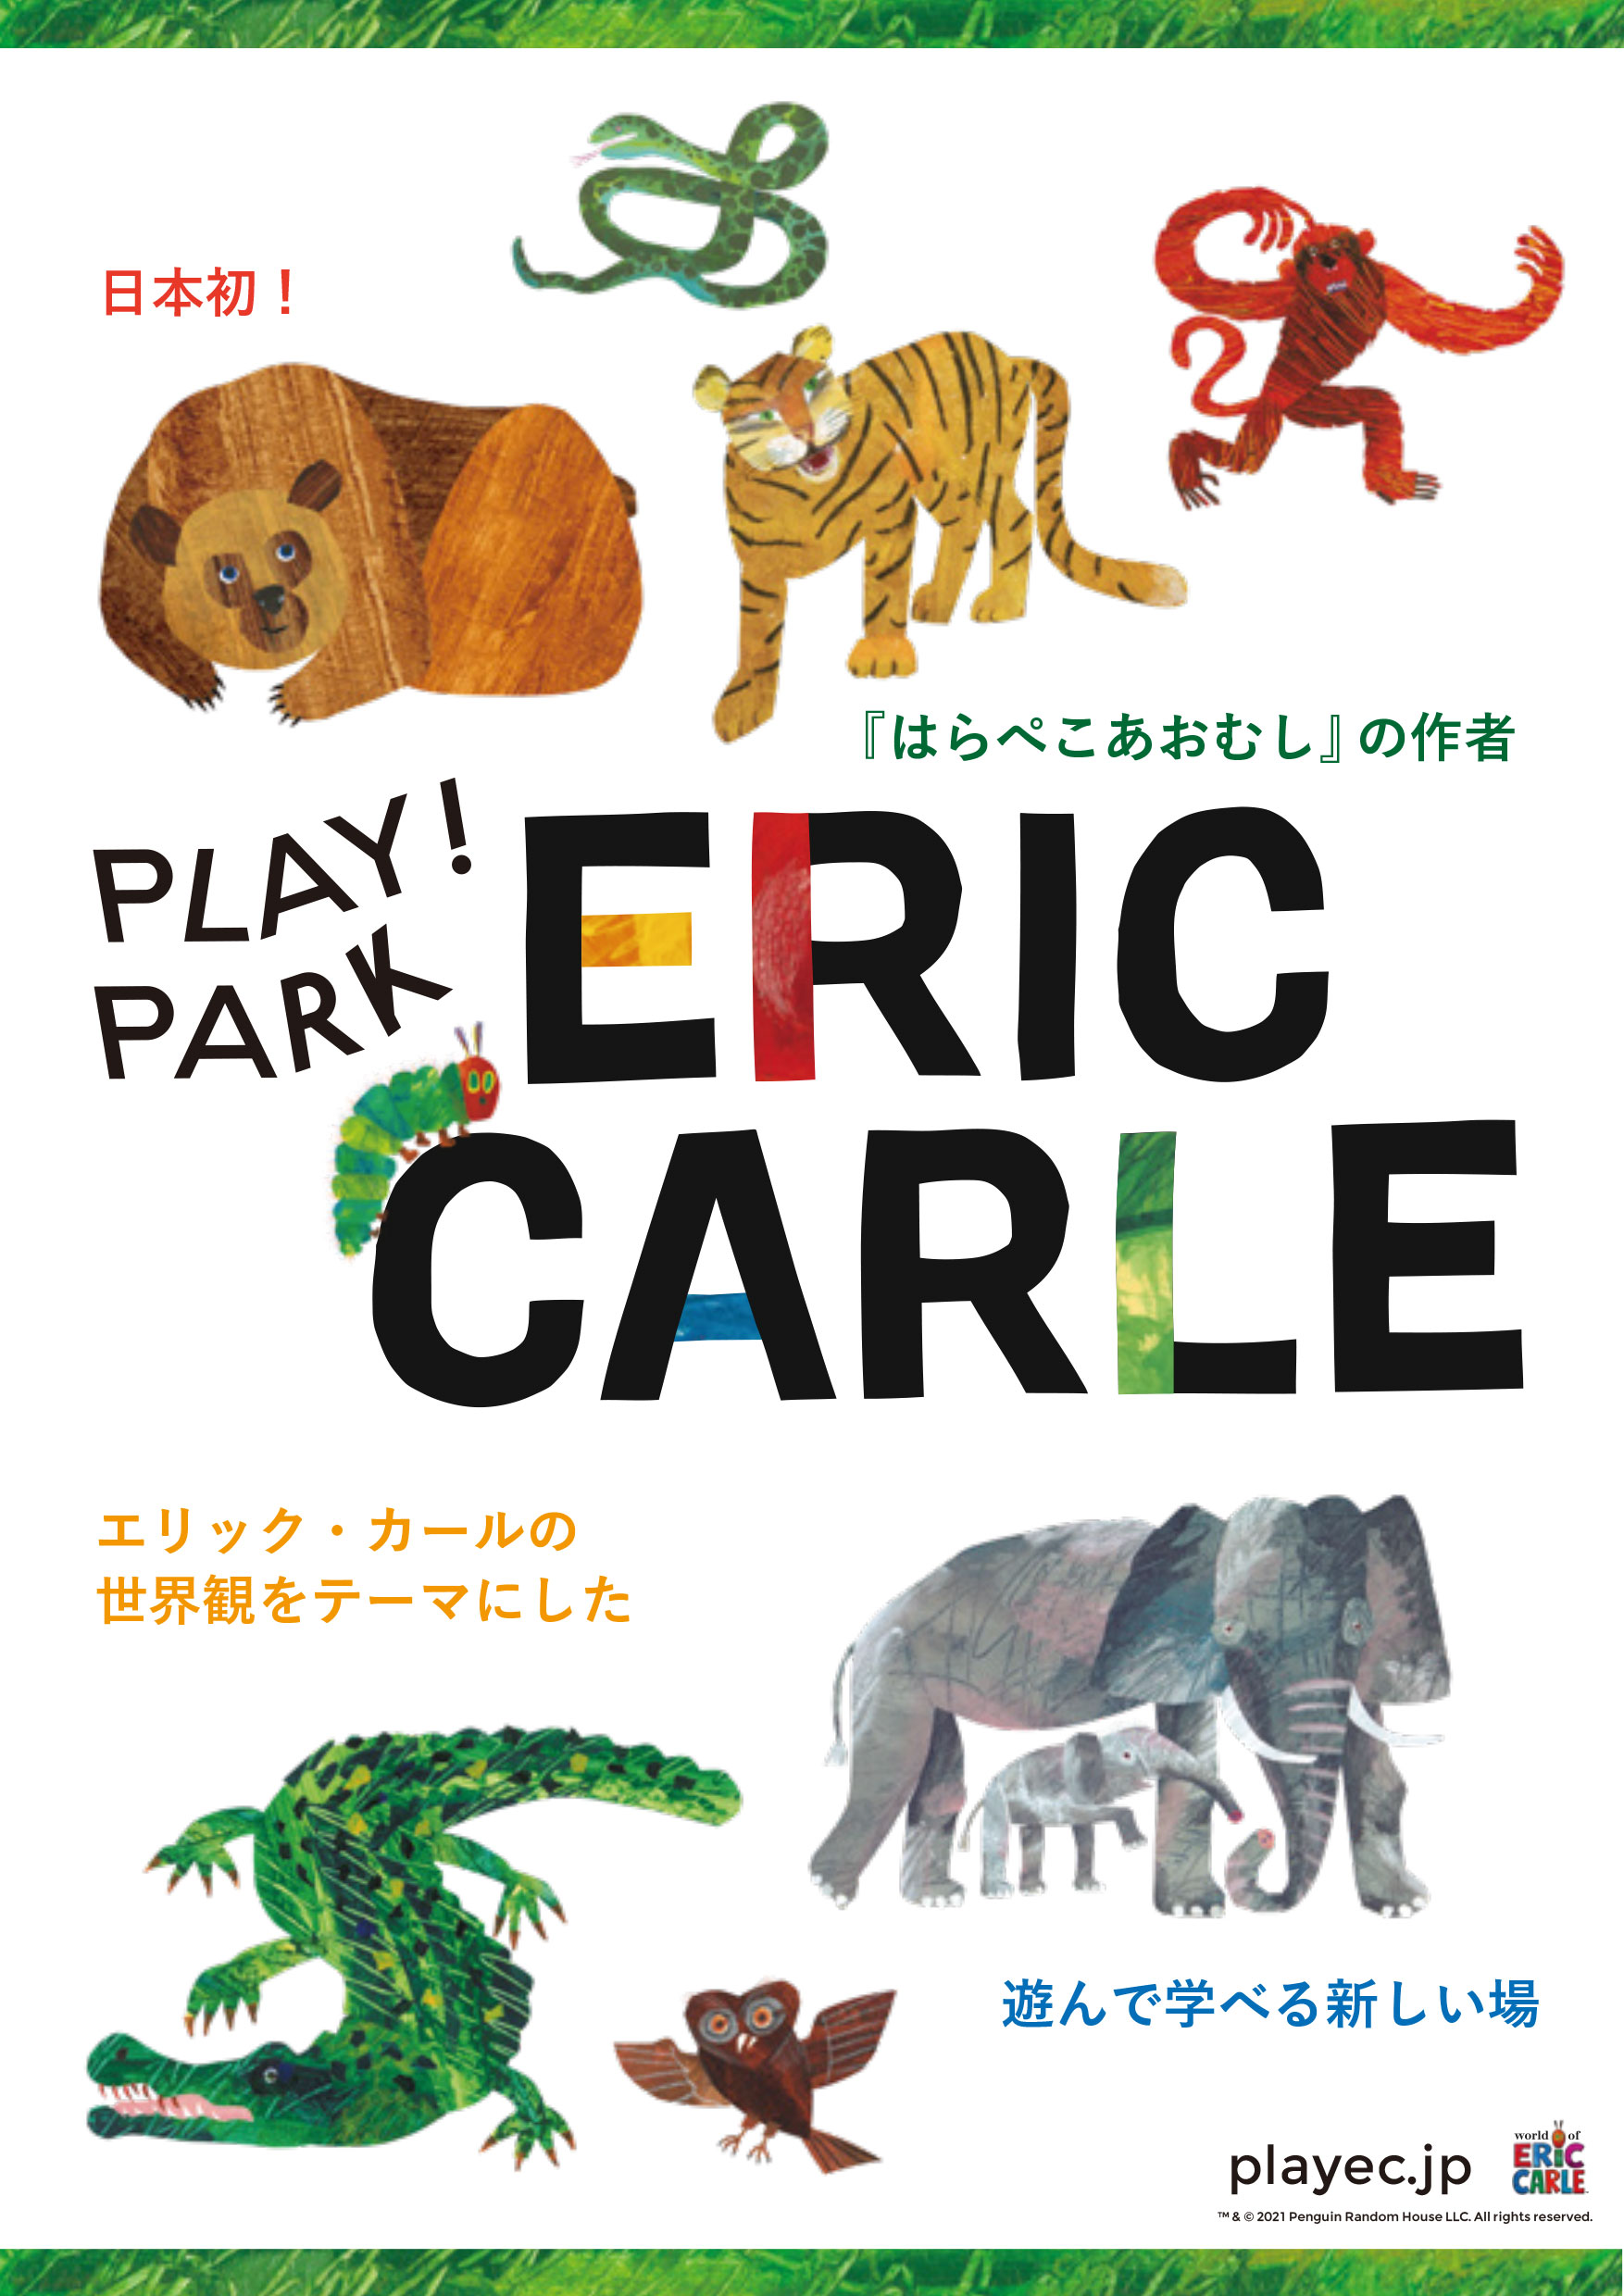 エリック・カールの絵本の世界を体験できる施設〈PLAY! PARK ERIC CARLE〉オープン